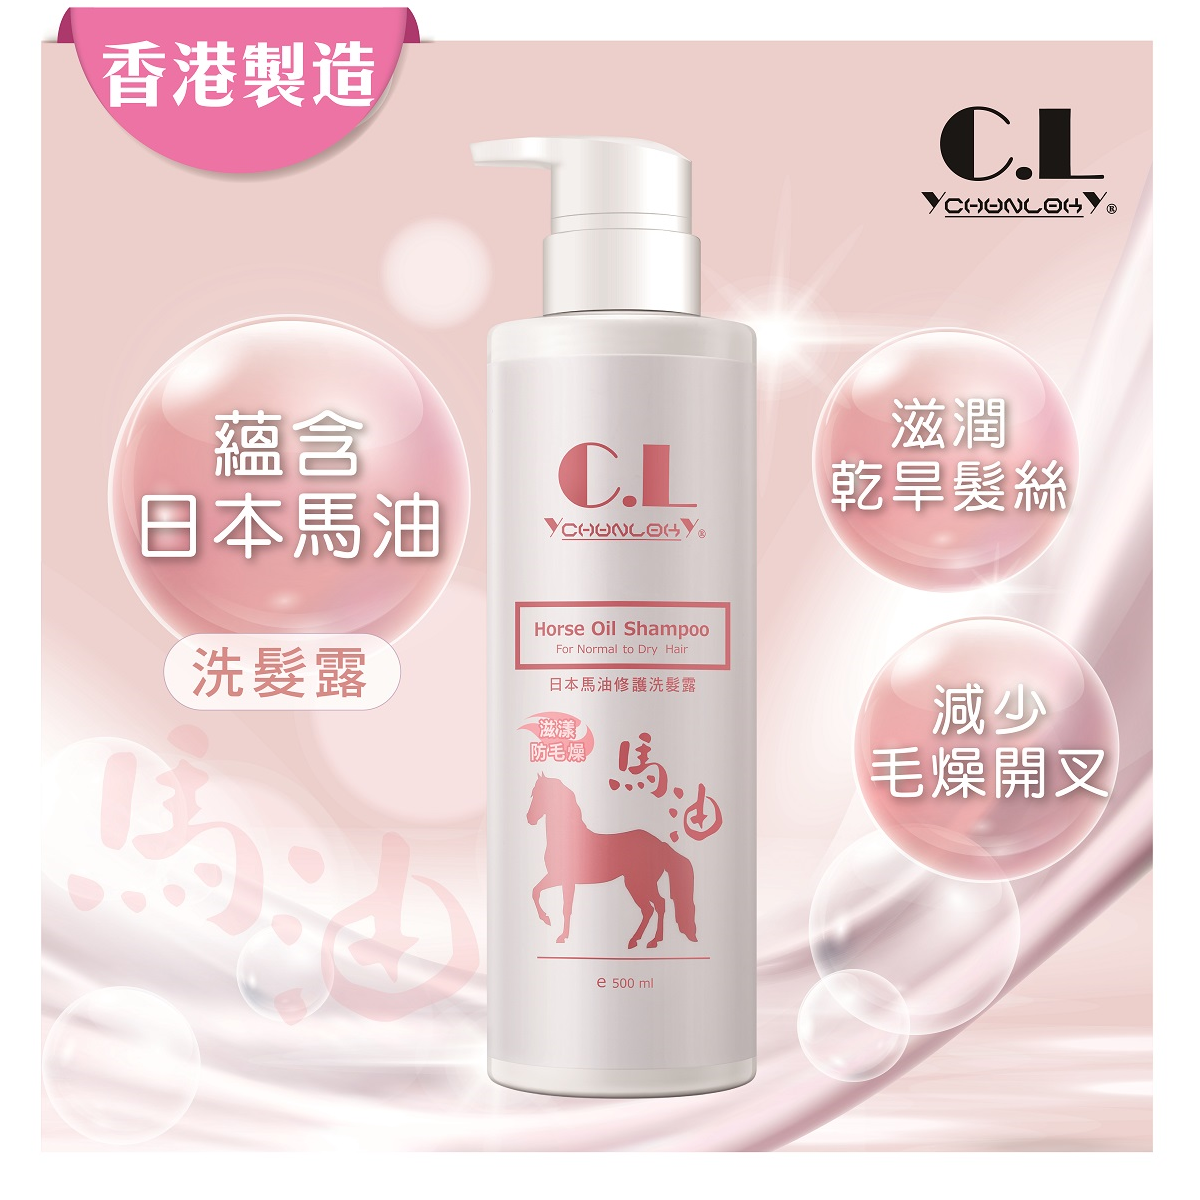 Horse Oil Shampoo (500 ml)